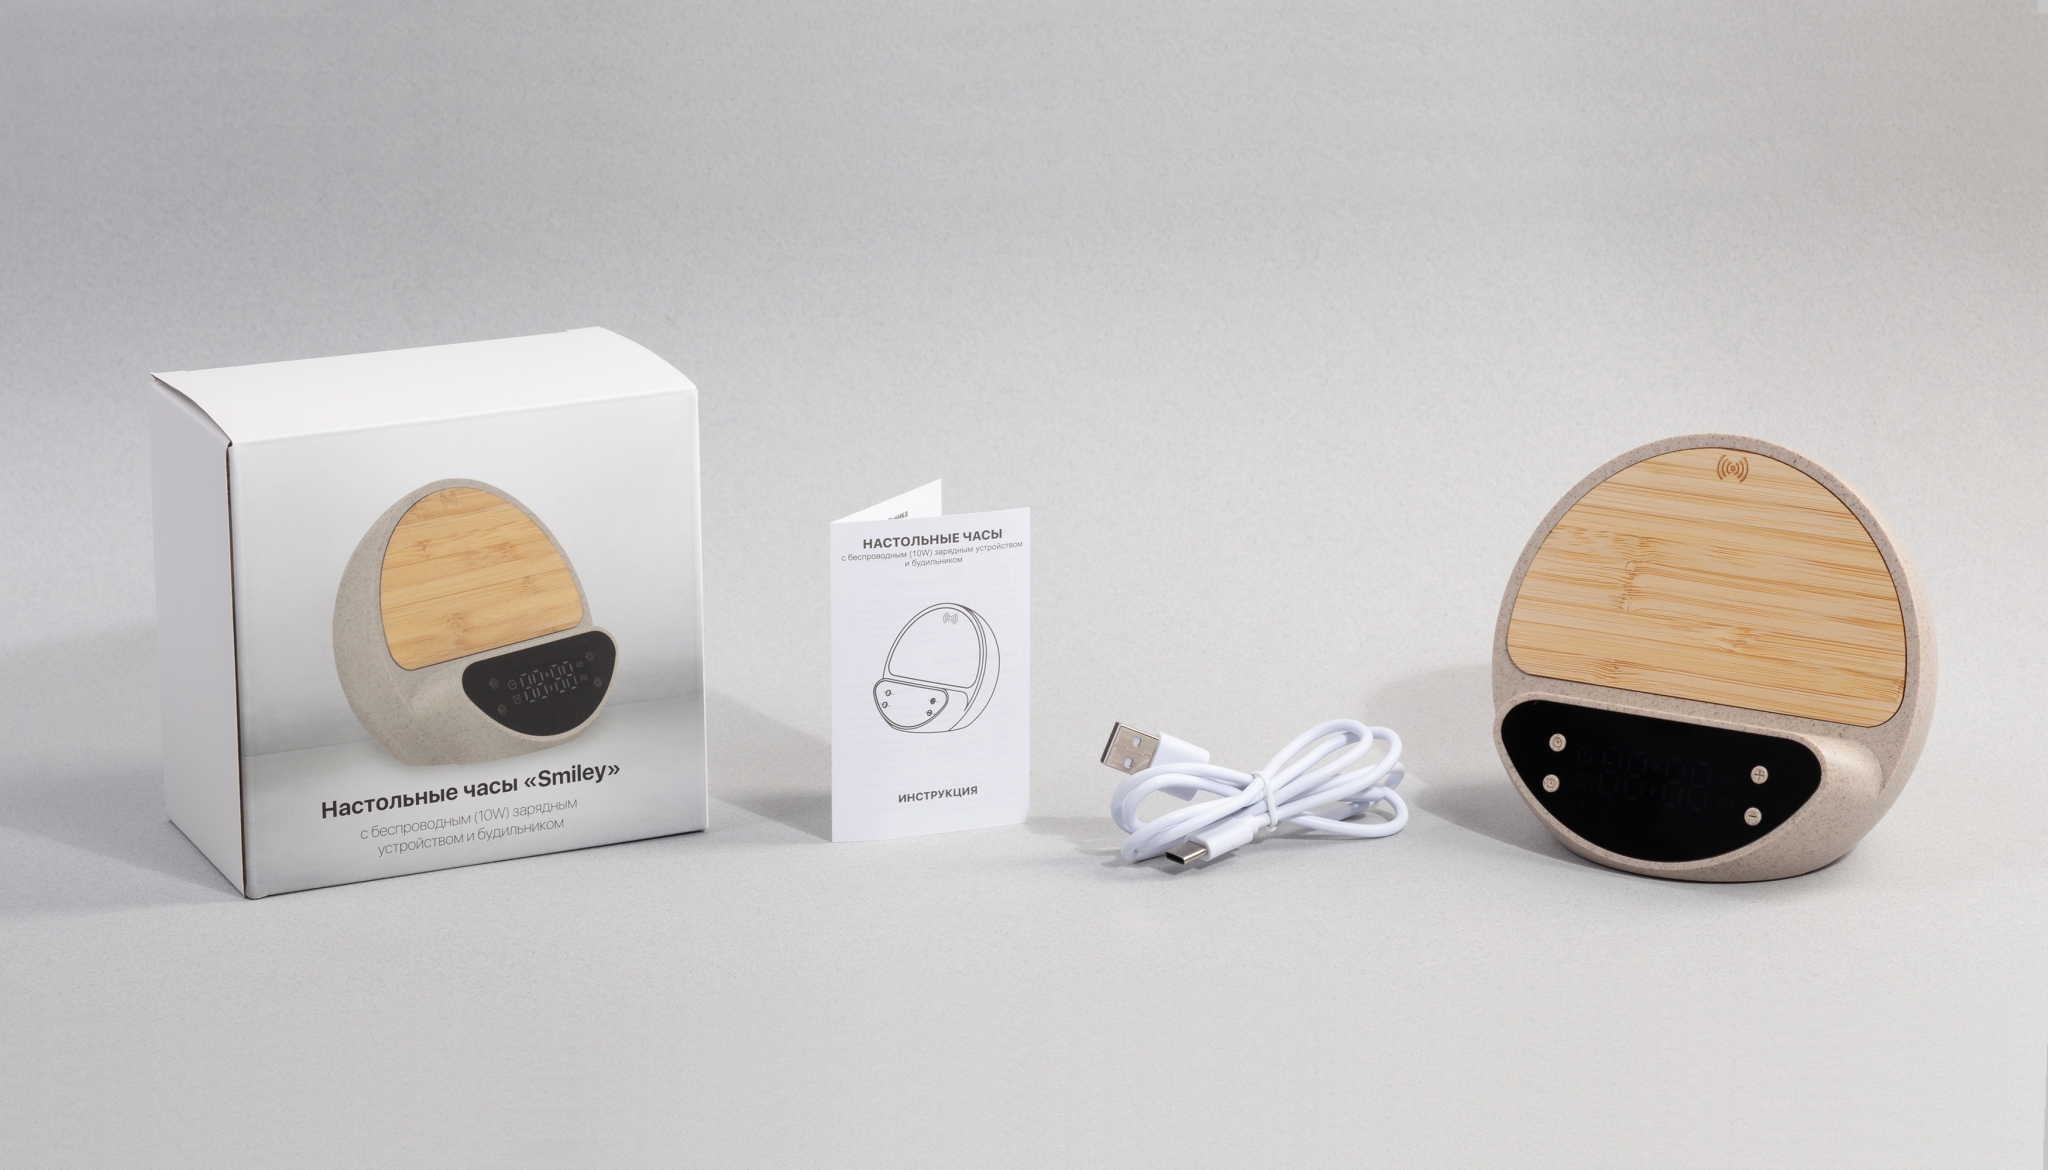 Настольные часы "Smiley" с беспроводным (10W) зарядным устройством и будильником, пшеница/бамбук/пластик, бежевый, пластик/растительные волокна/бамбук